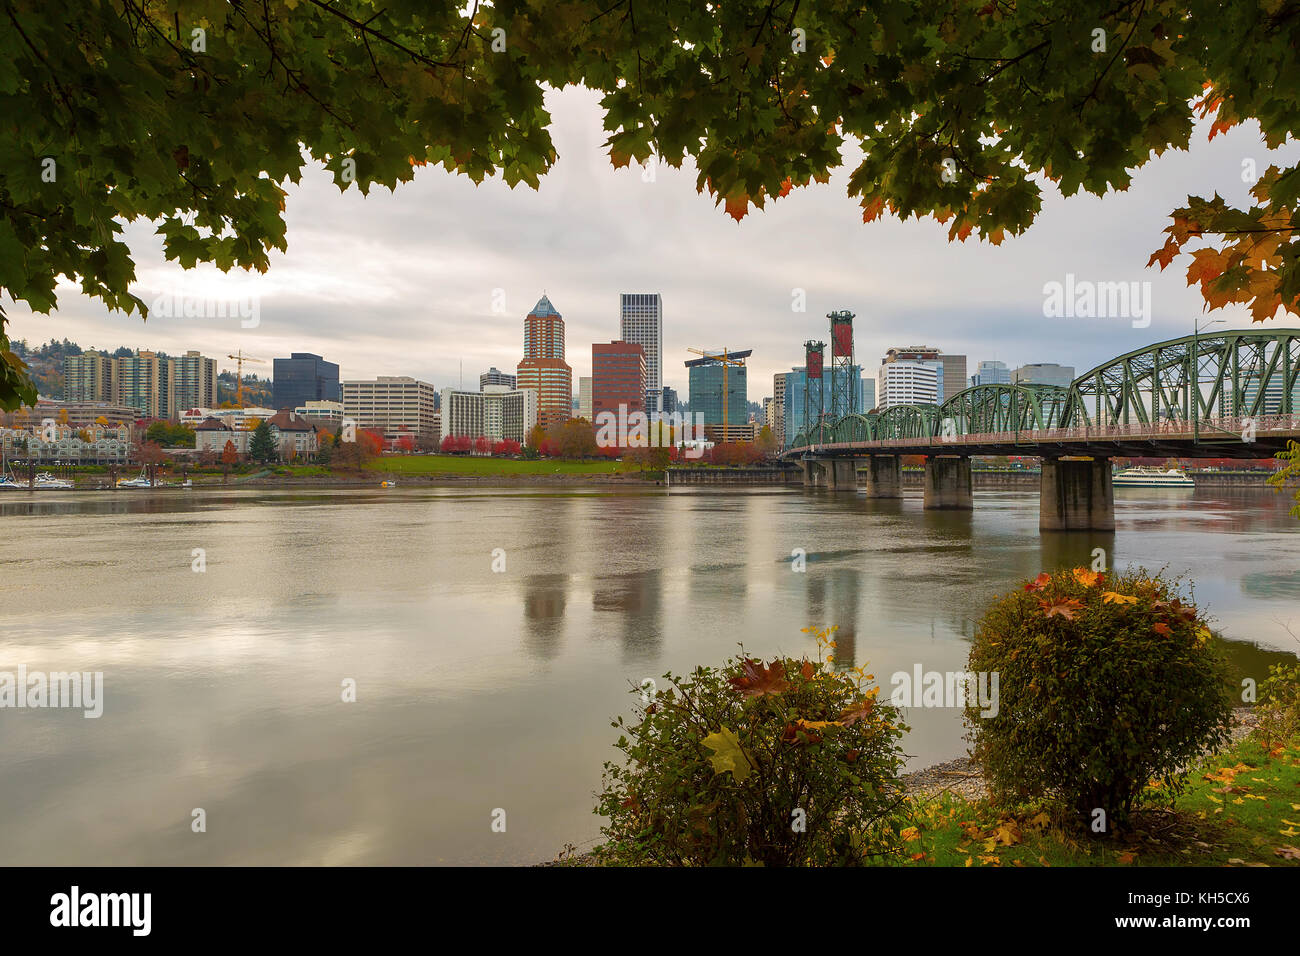 Le centre-ville de Portland, Oregon City skyline encadrée par le feuillage de l'automne le long de la rivière Willamette Banque D'Images